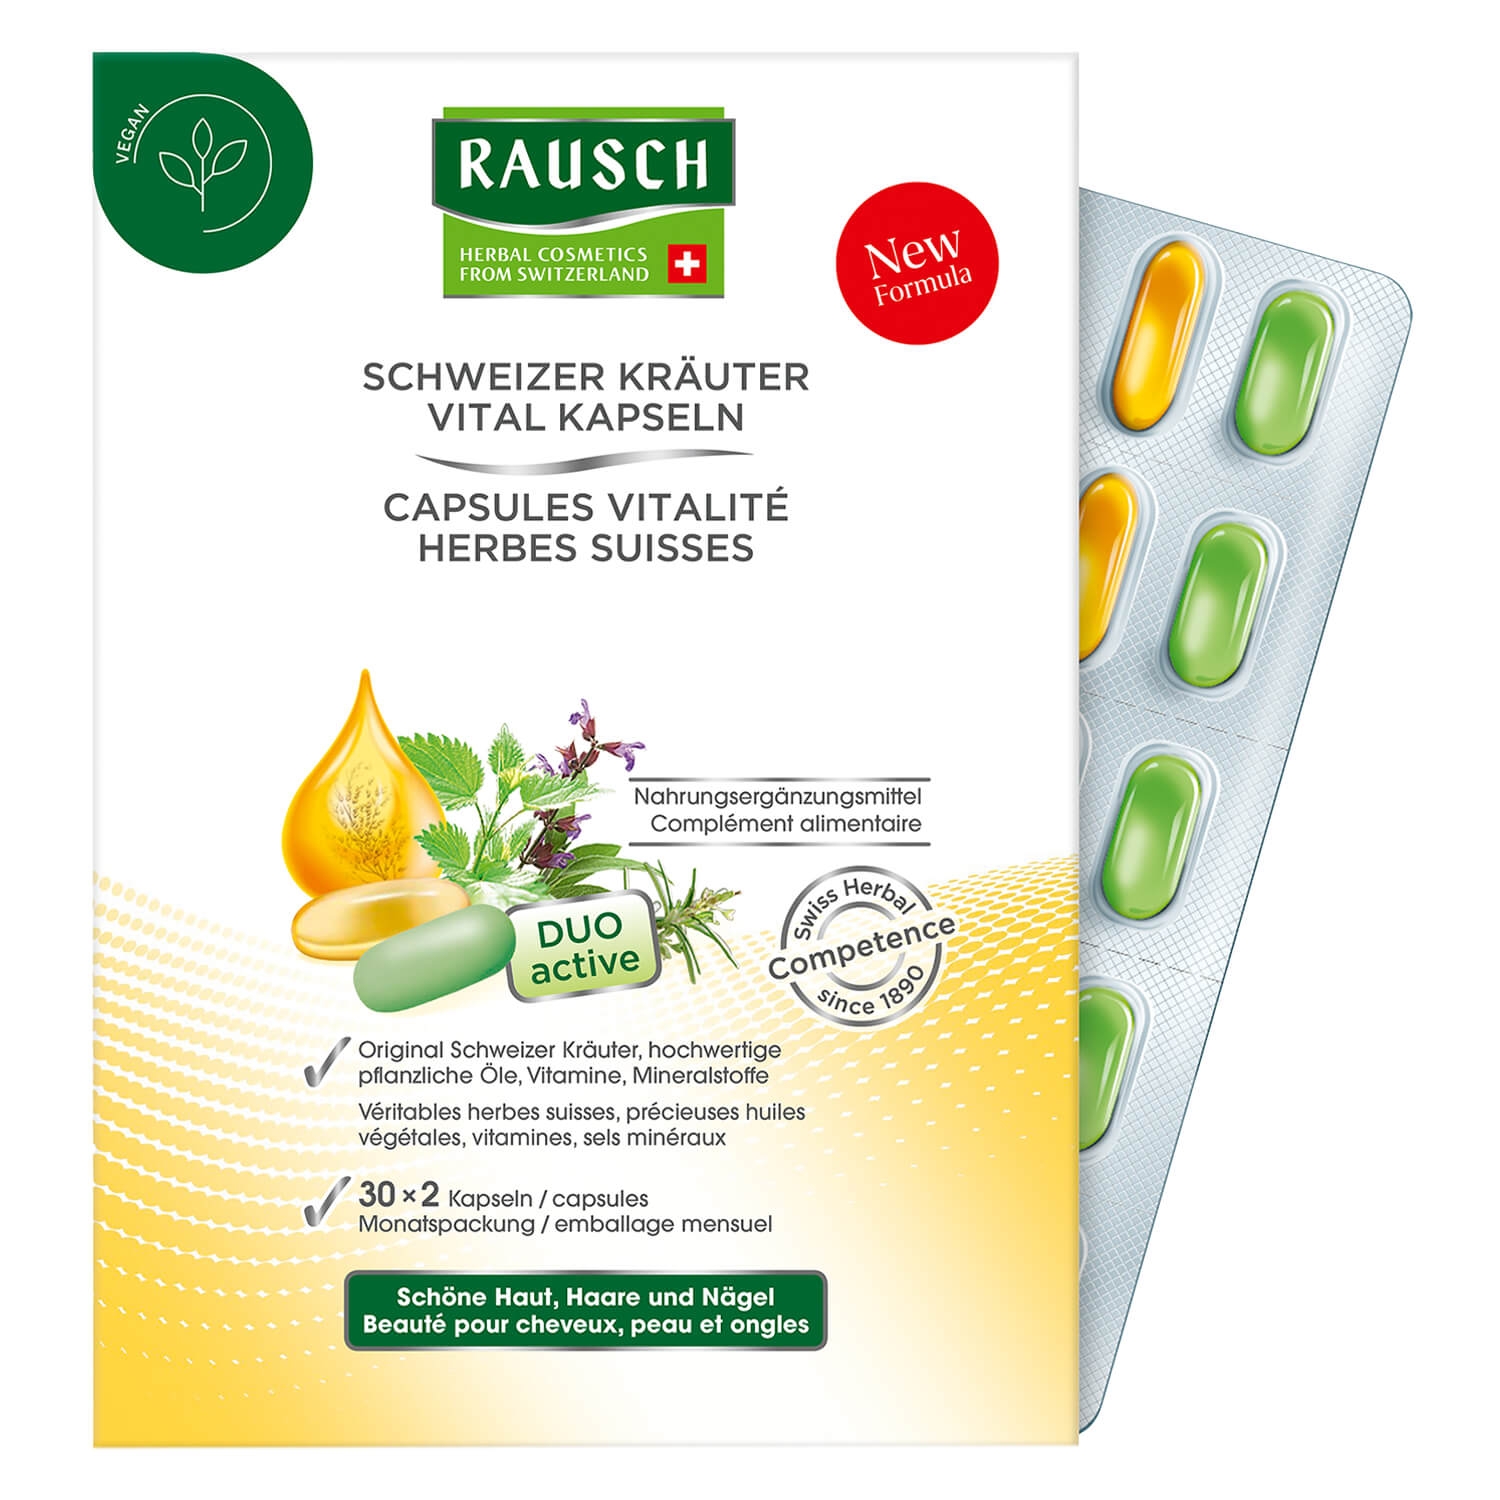 Product image from RAUSCH - Schweizer Kräuter Vital Kapseln